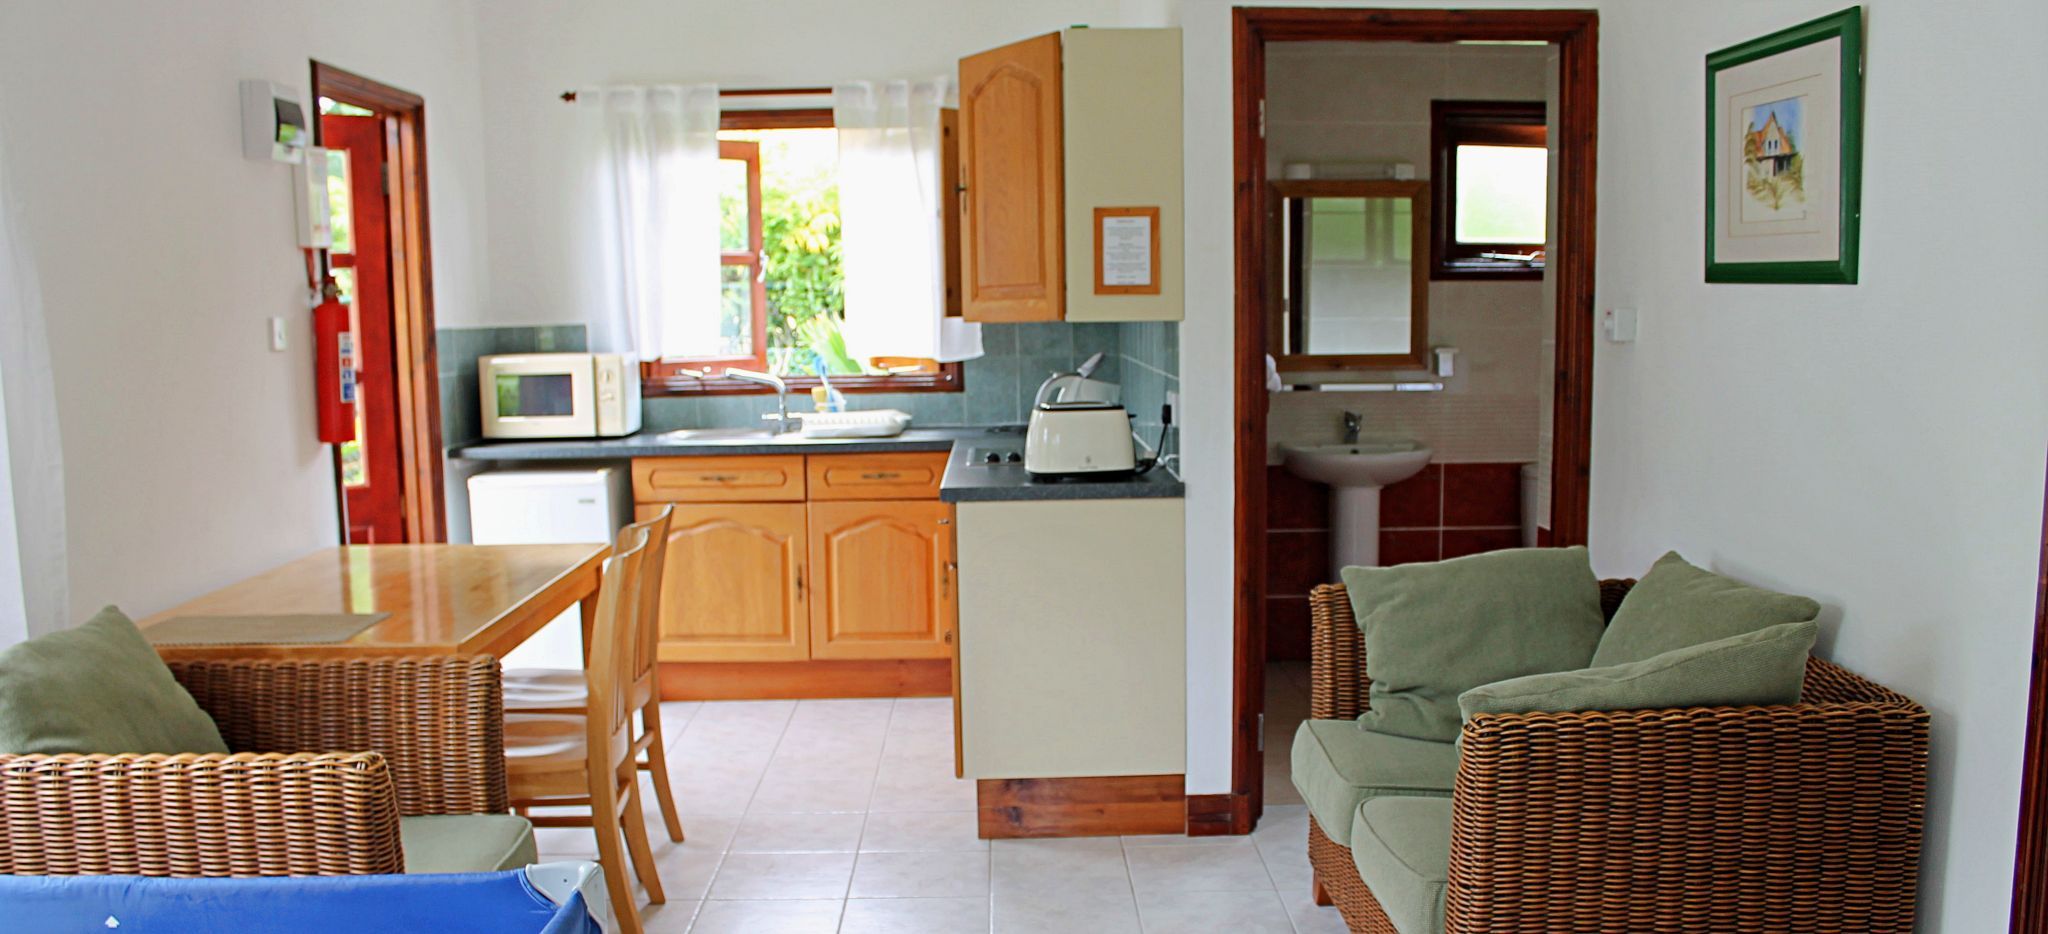 Wohnbereich mit Küchenzeile und Esstisch